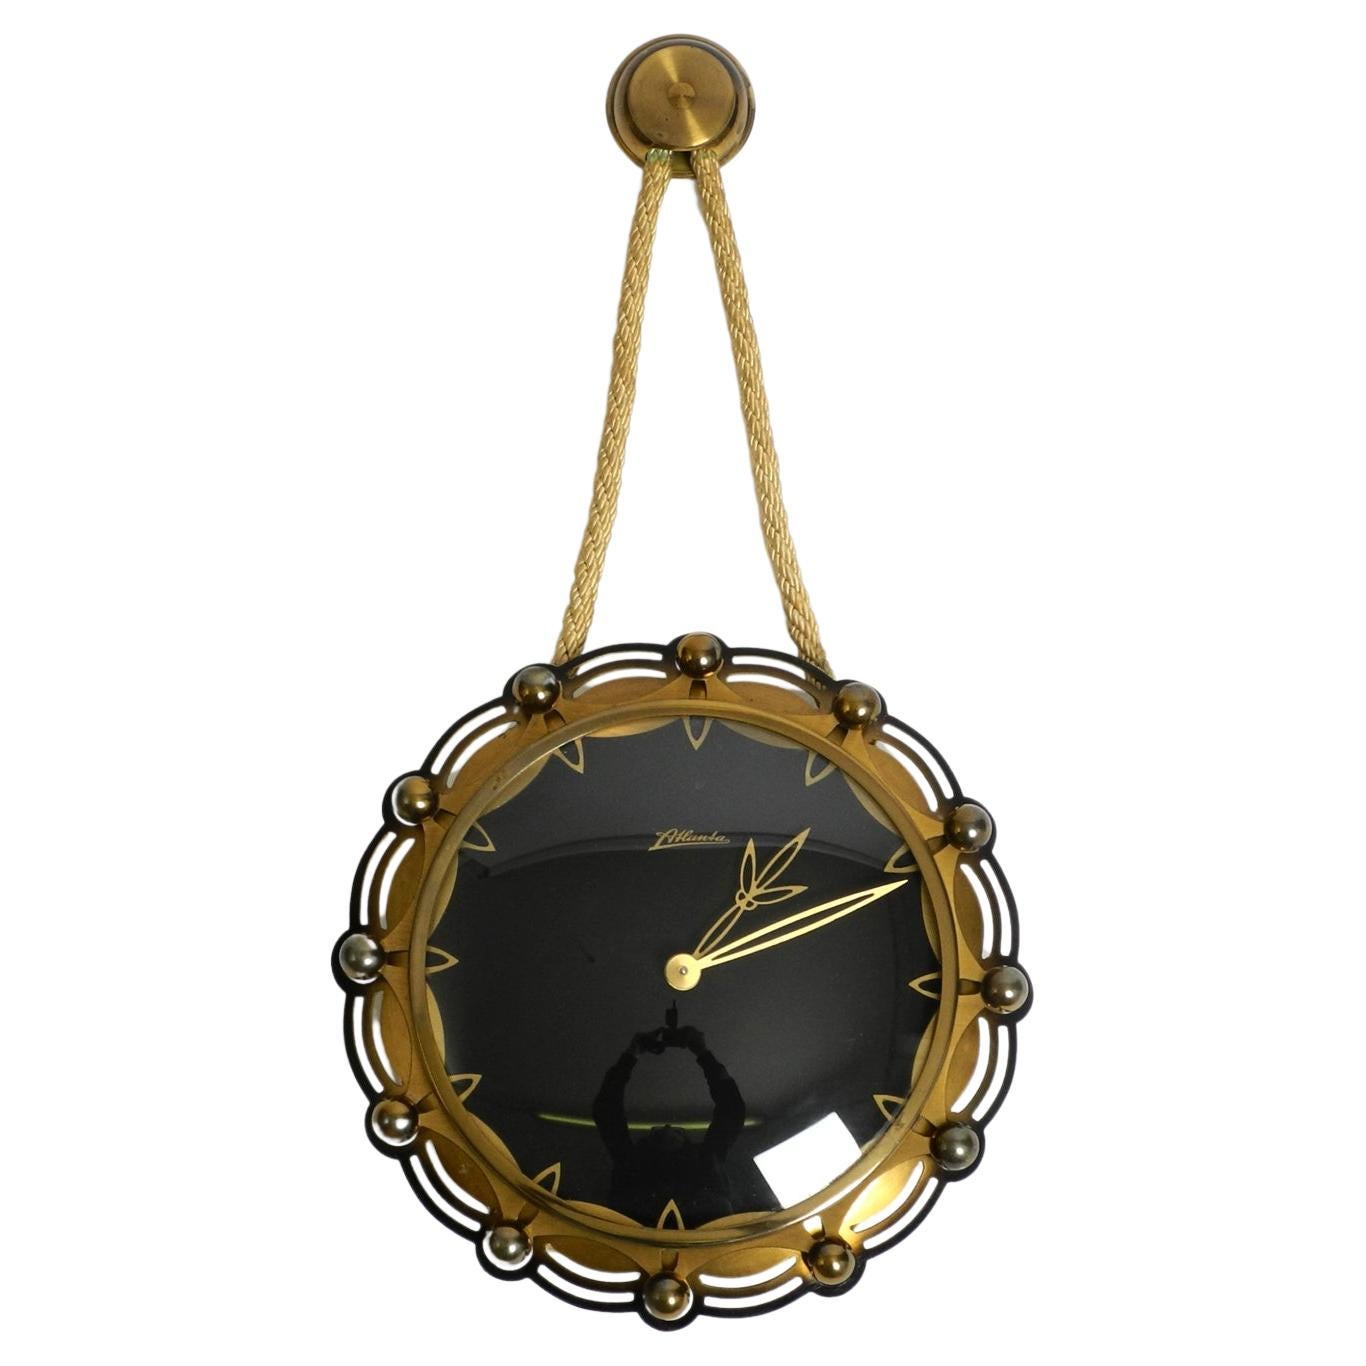 Horloge murale mécanique Atlanta des années 1950 avec un mouvement de 10 jours et une sonnerie de gong